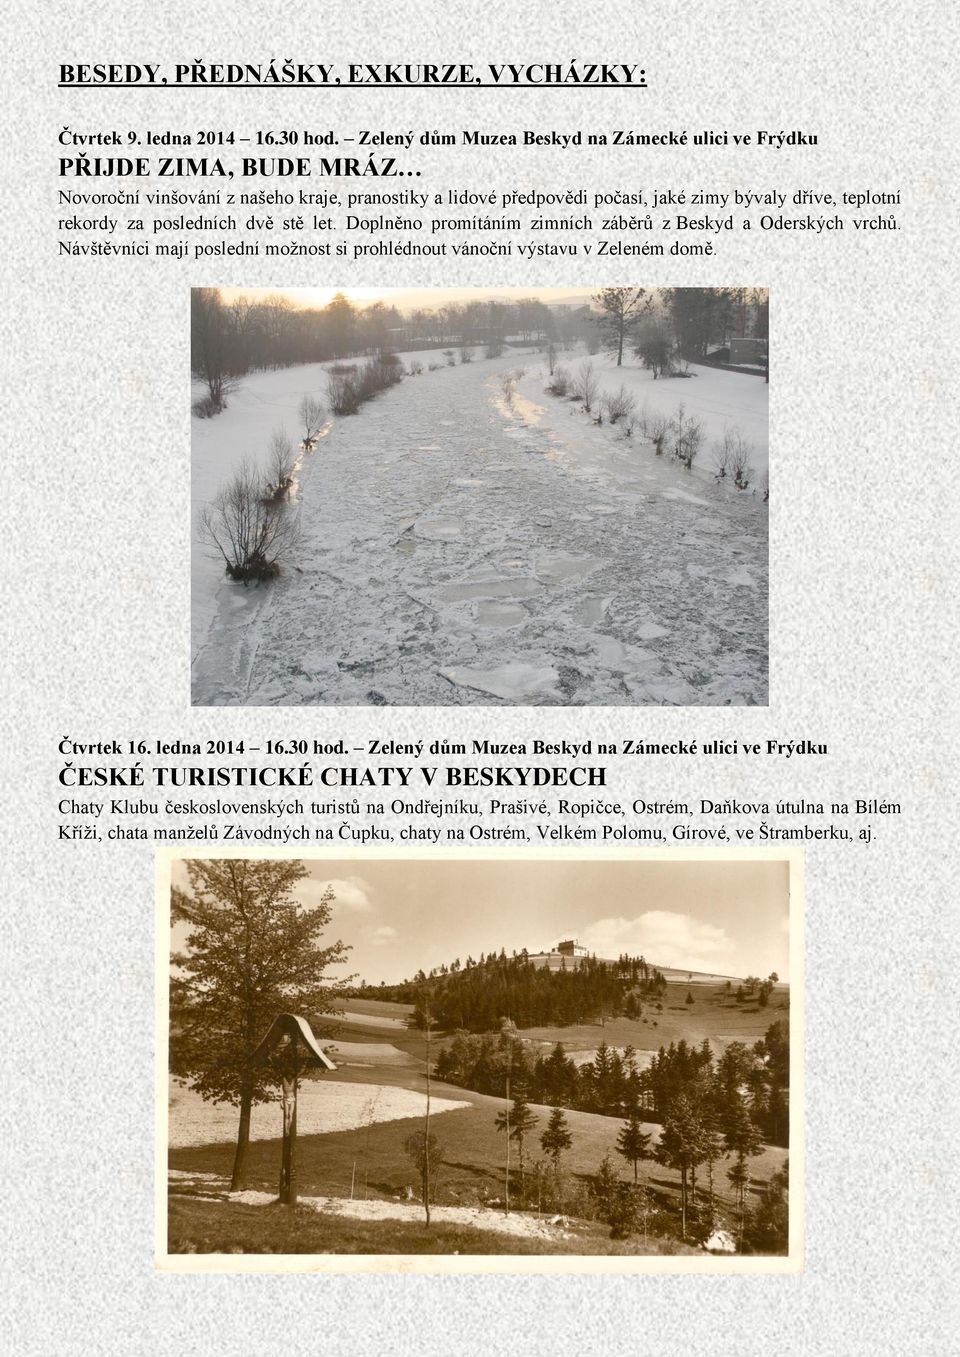 rekordy za posledních dvě stě let. Doplněno promítáním zimních záběrů z Beskyd a Oderských vrchů. Návštěvníci mají poslední možnost si prohlédnout vánoční výstavu v Zeleném domě.